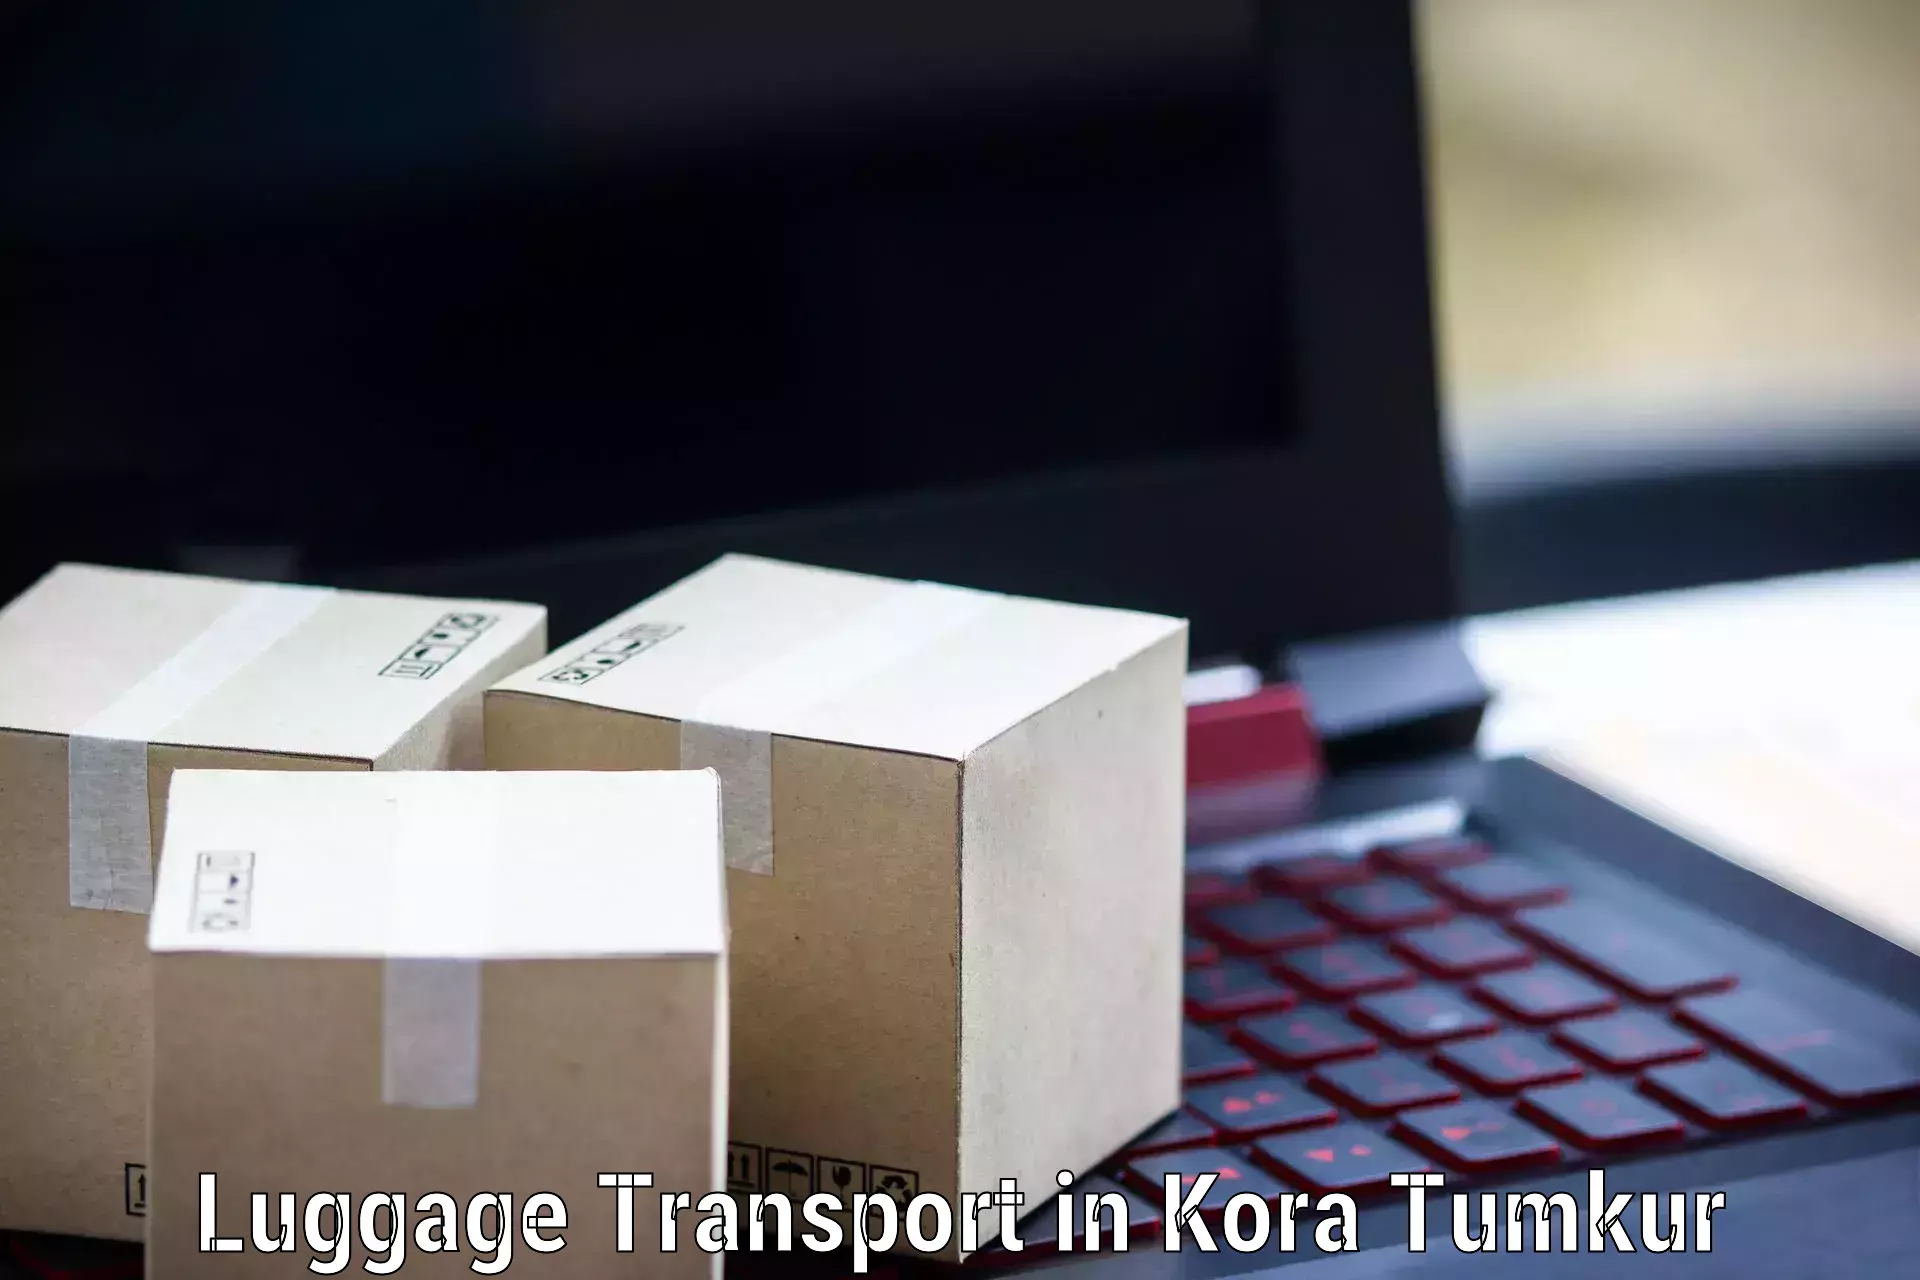 Luggage transport pricing in Kora Tumkur